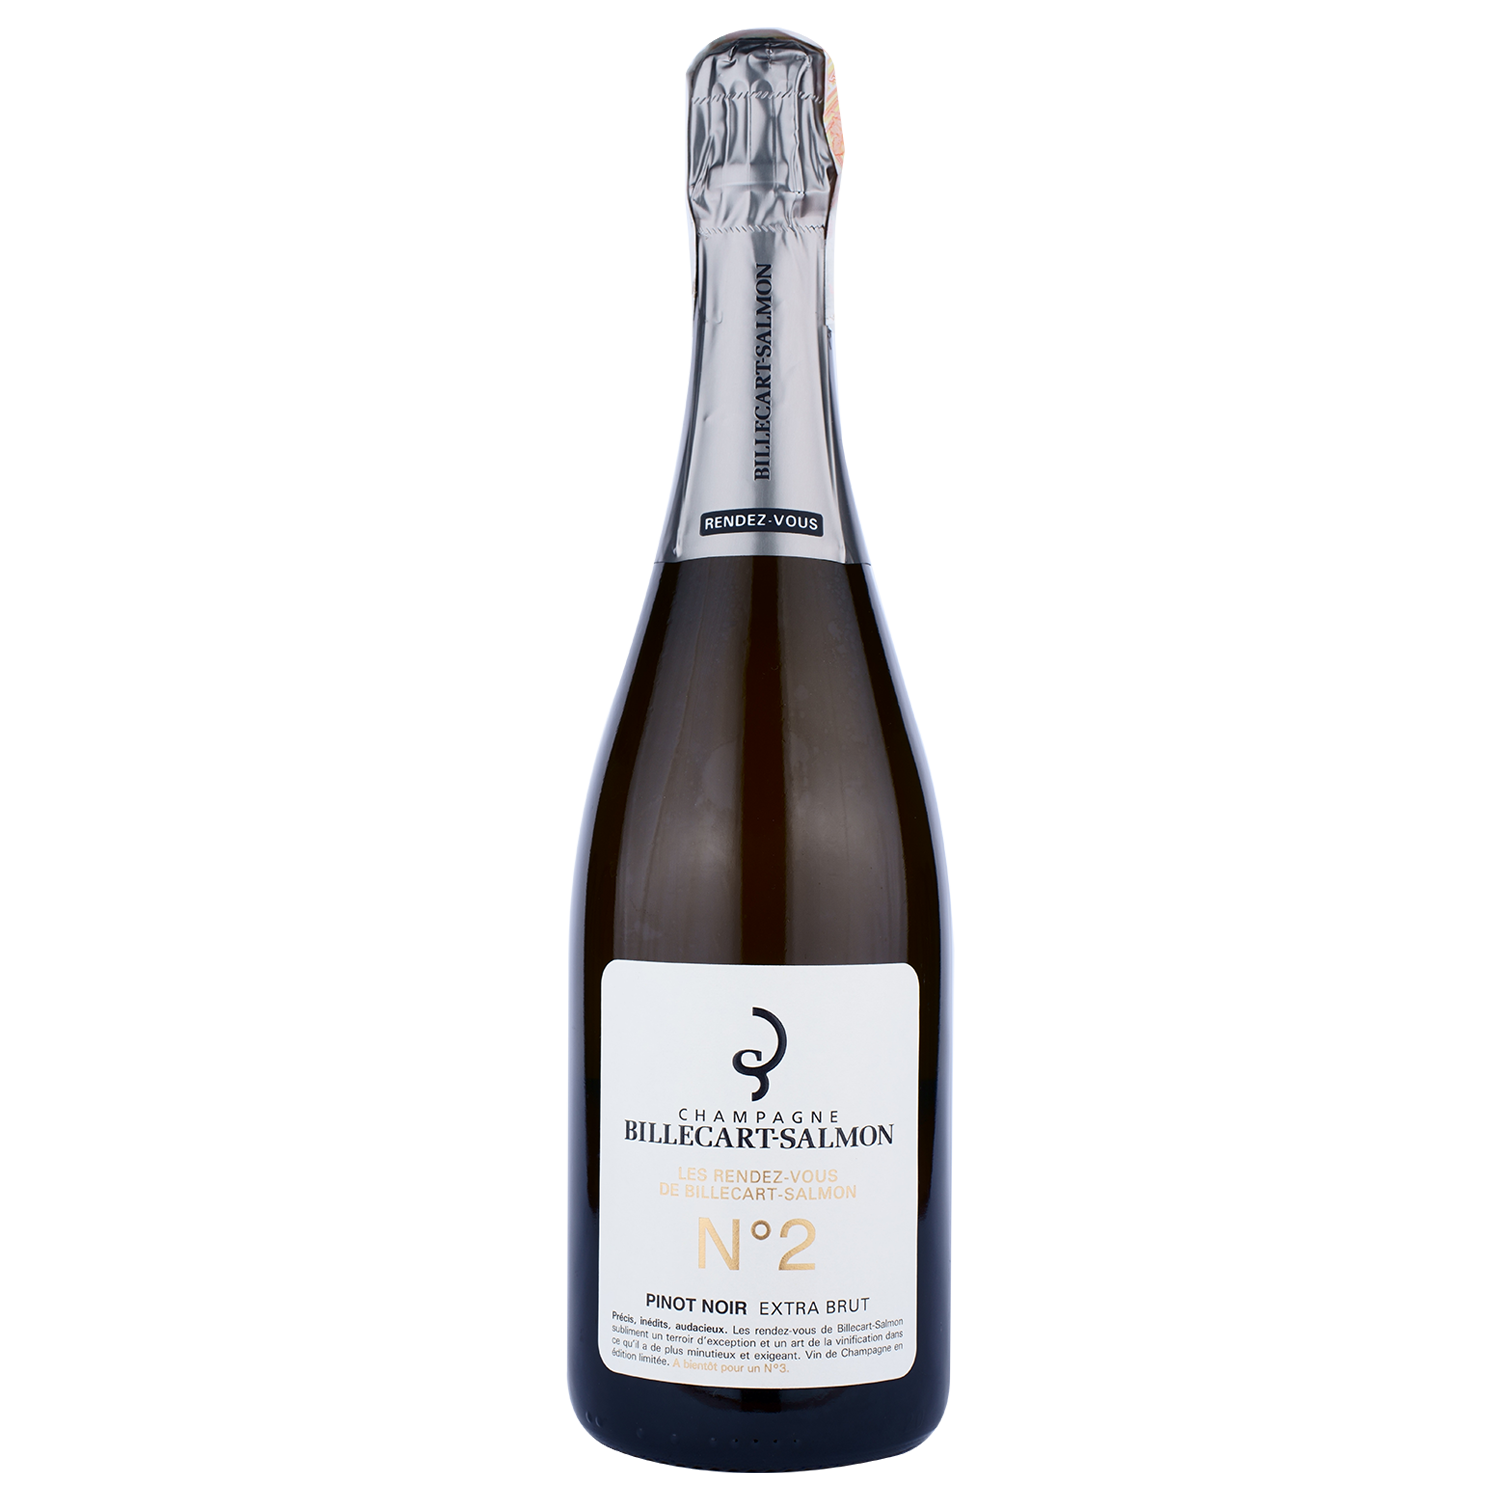 Шампанское Billecart-Salmon Champagne Les Randez-vous No2 Pinot Noir Extra Brut, белое, экстра брют, в п/у, 0,75 л - фото 1